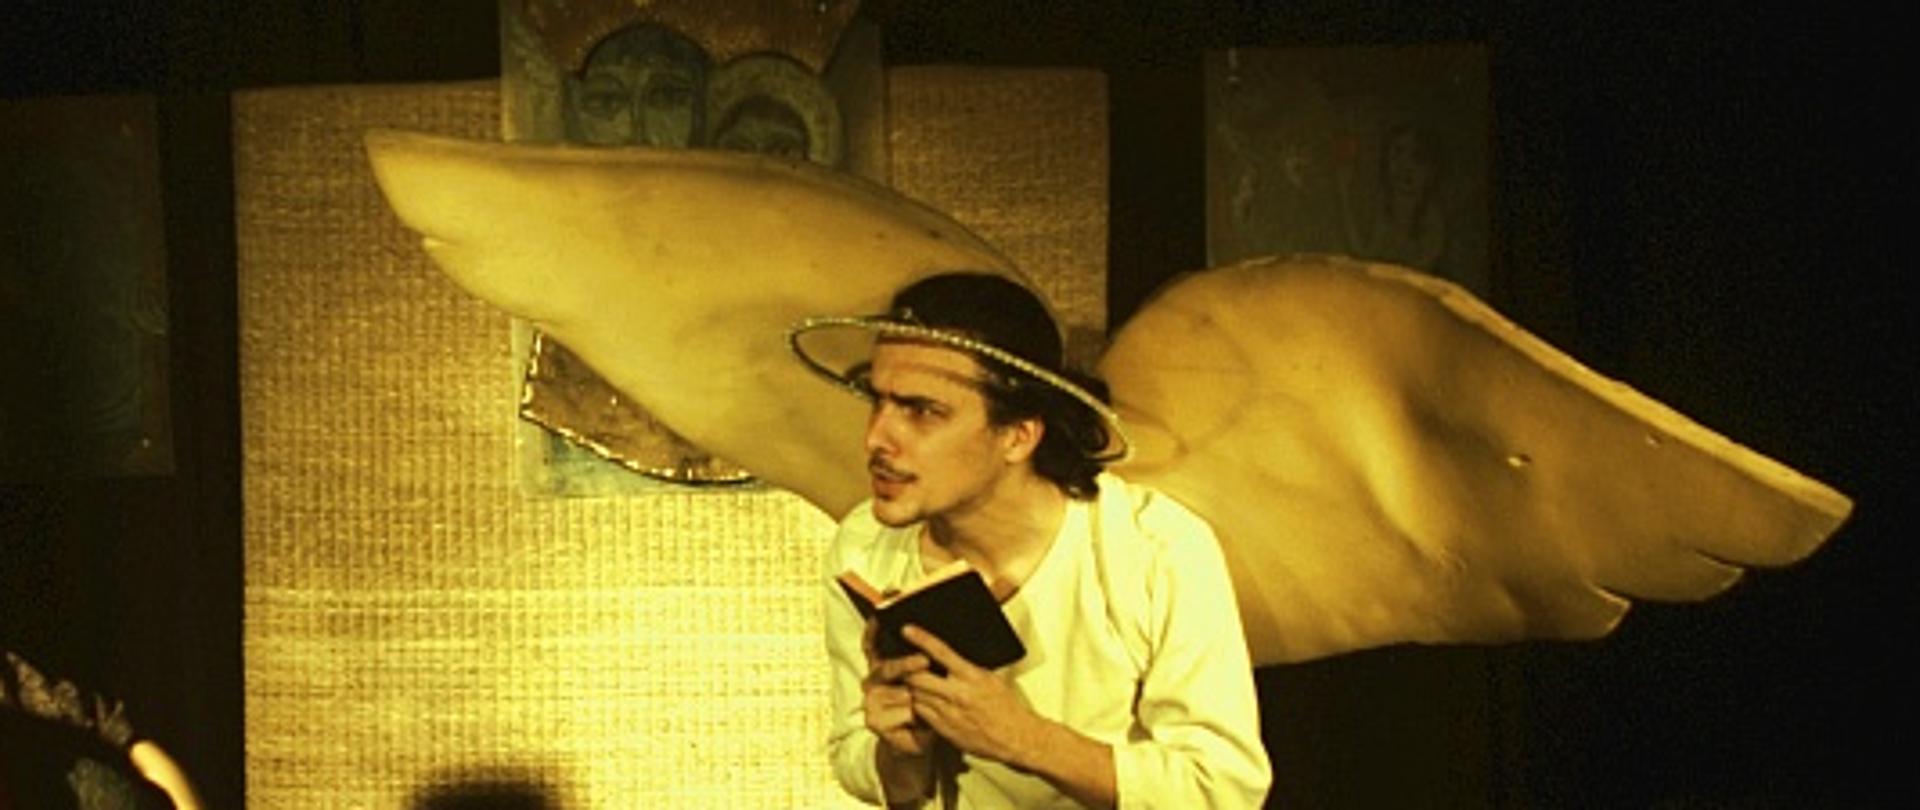 Zdjęcie przedstawia scenę z przedstawienia Pastorałka. Aktor przebrany za anioła czyta książkę 